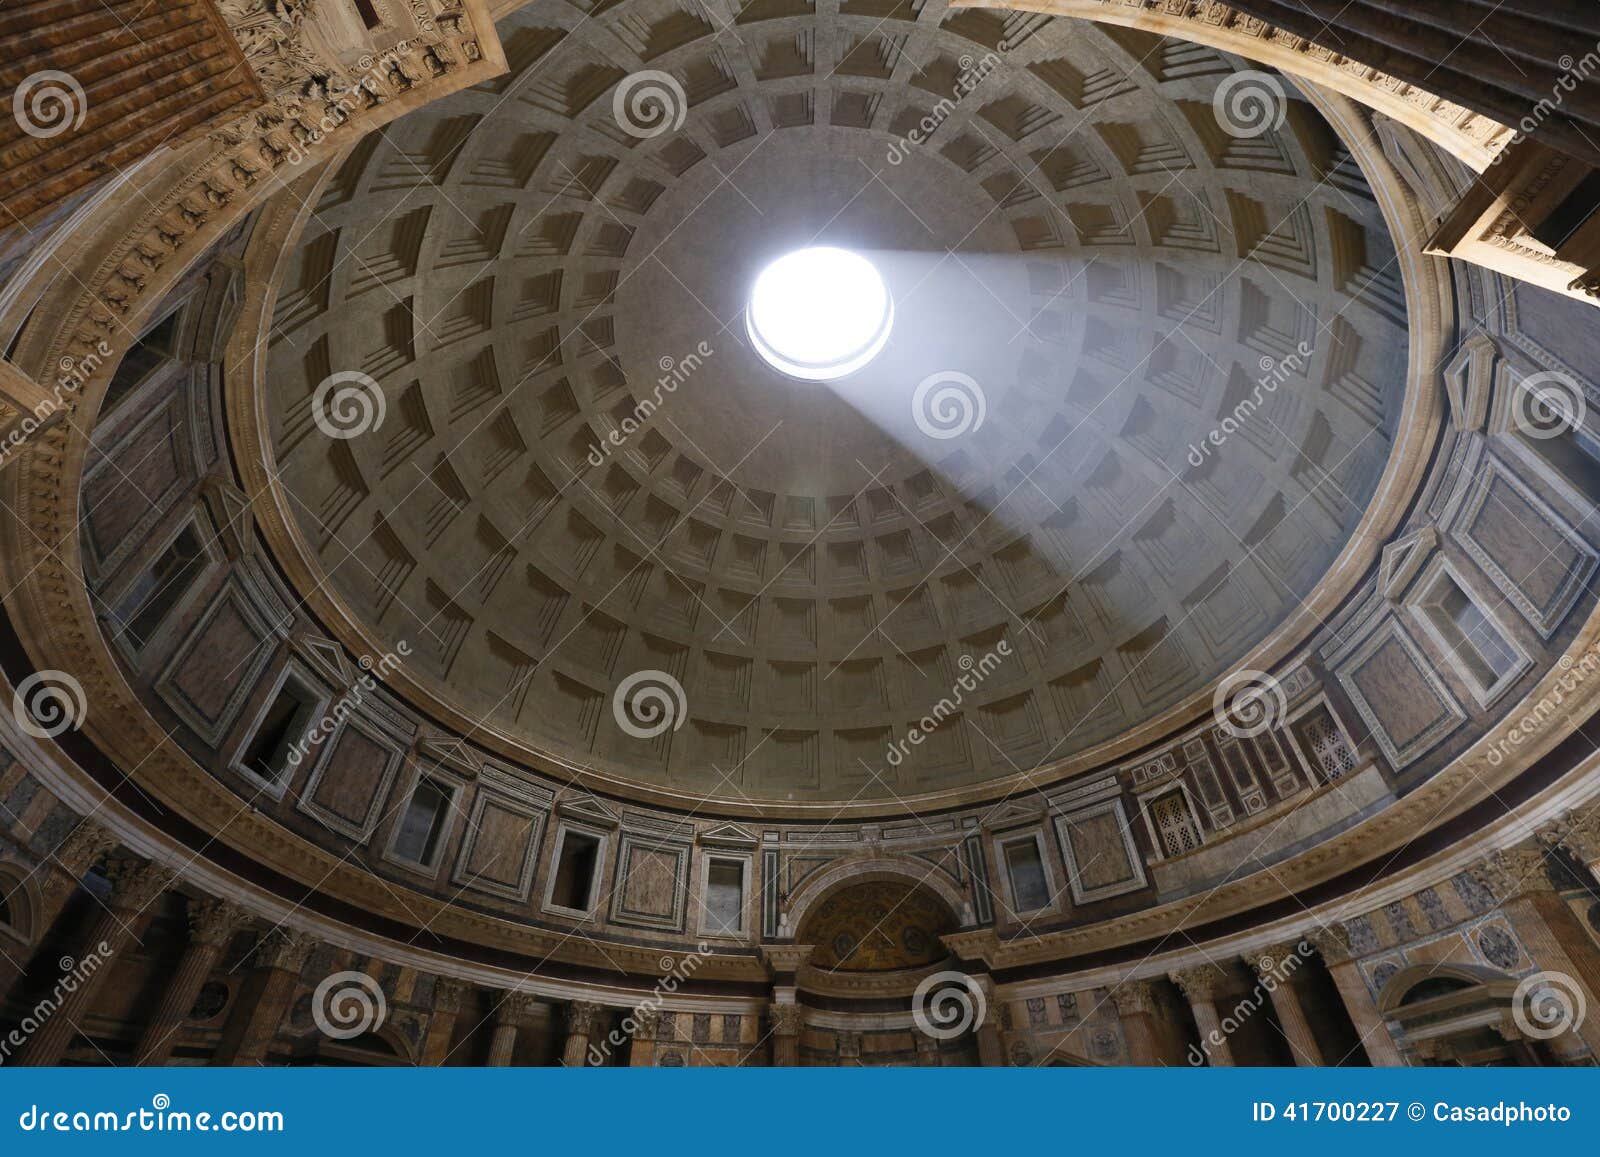 Pantheon Rome Stock Image Image Of Historic Pantheon